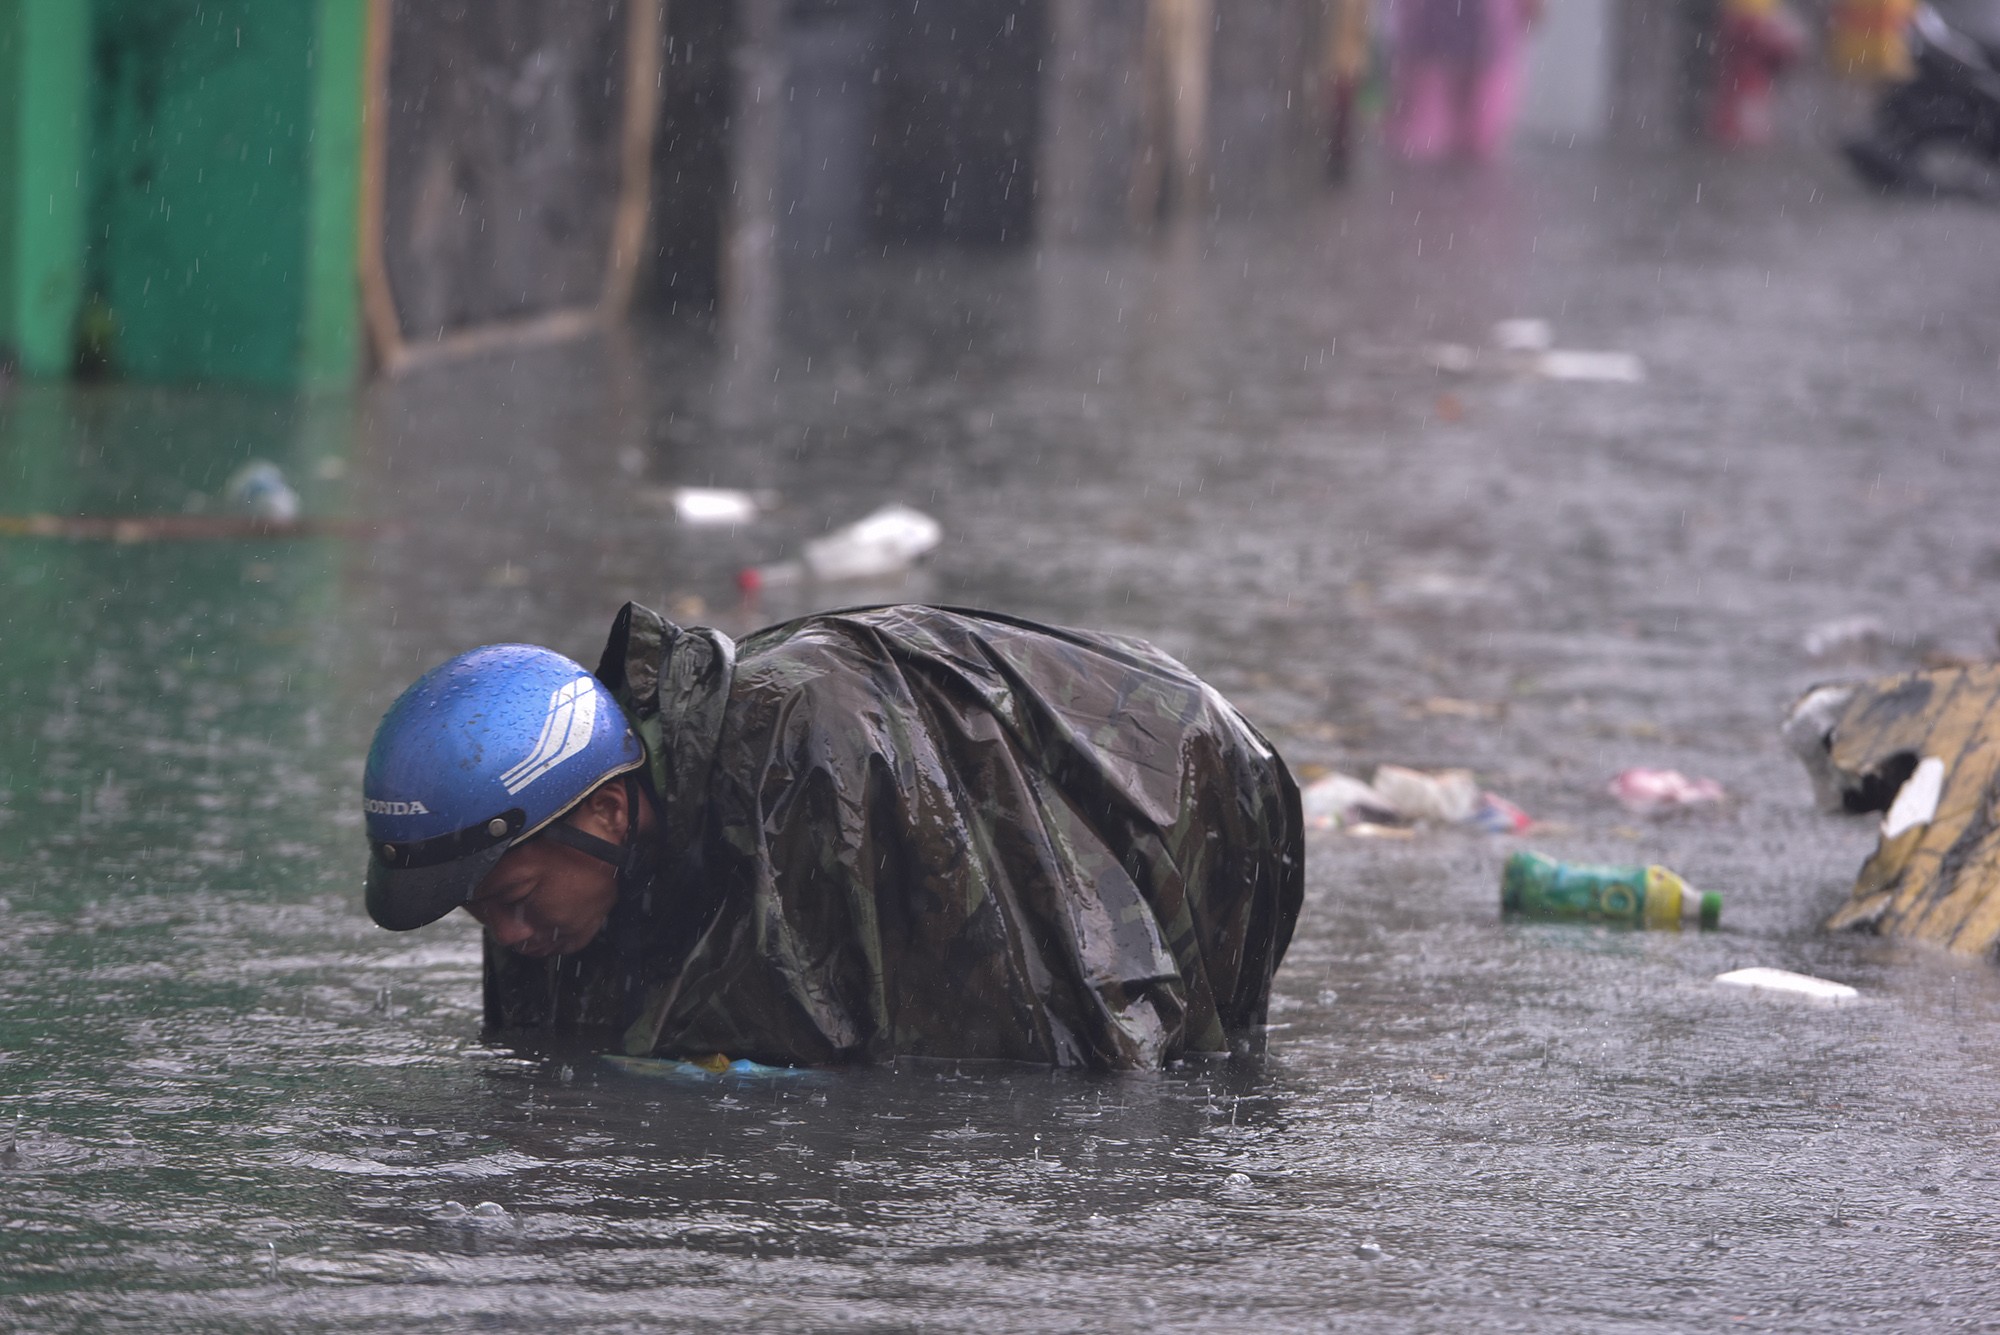 Đường ở TP.HCM ngập sâu trong mưa lớn, nhiều người ngã nhào - 17